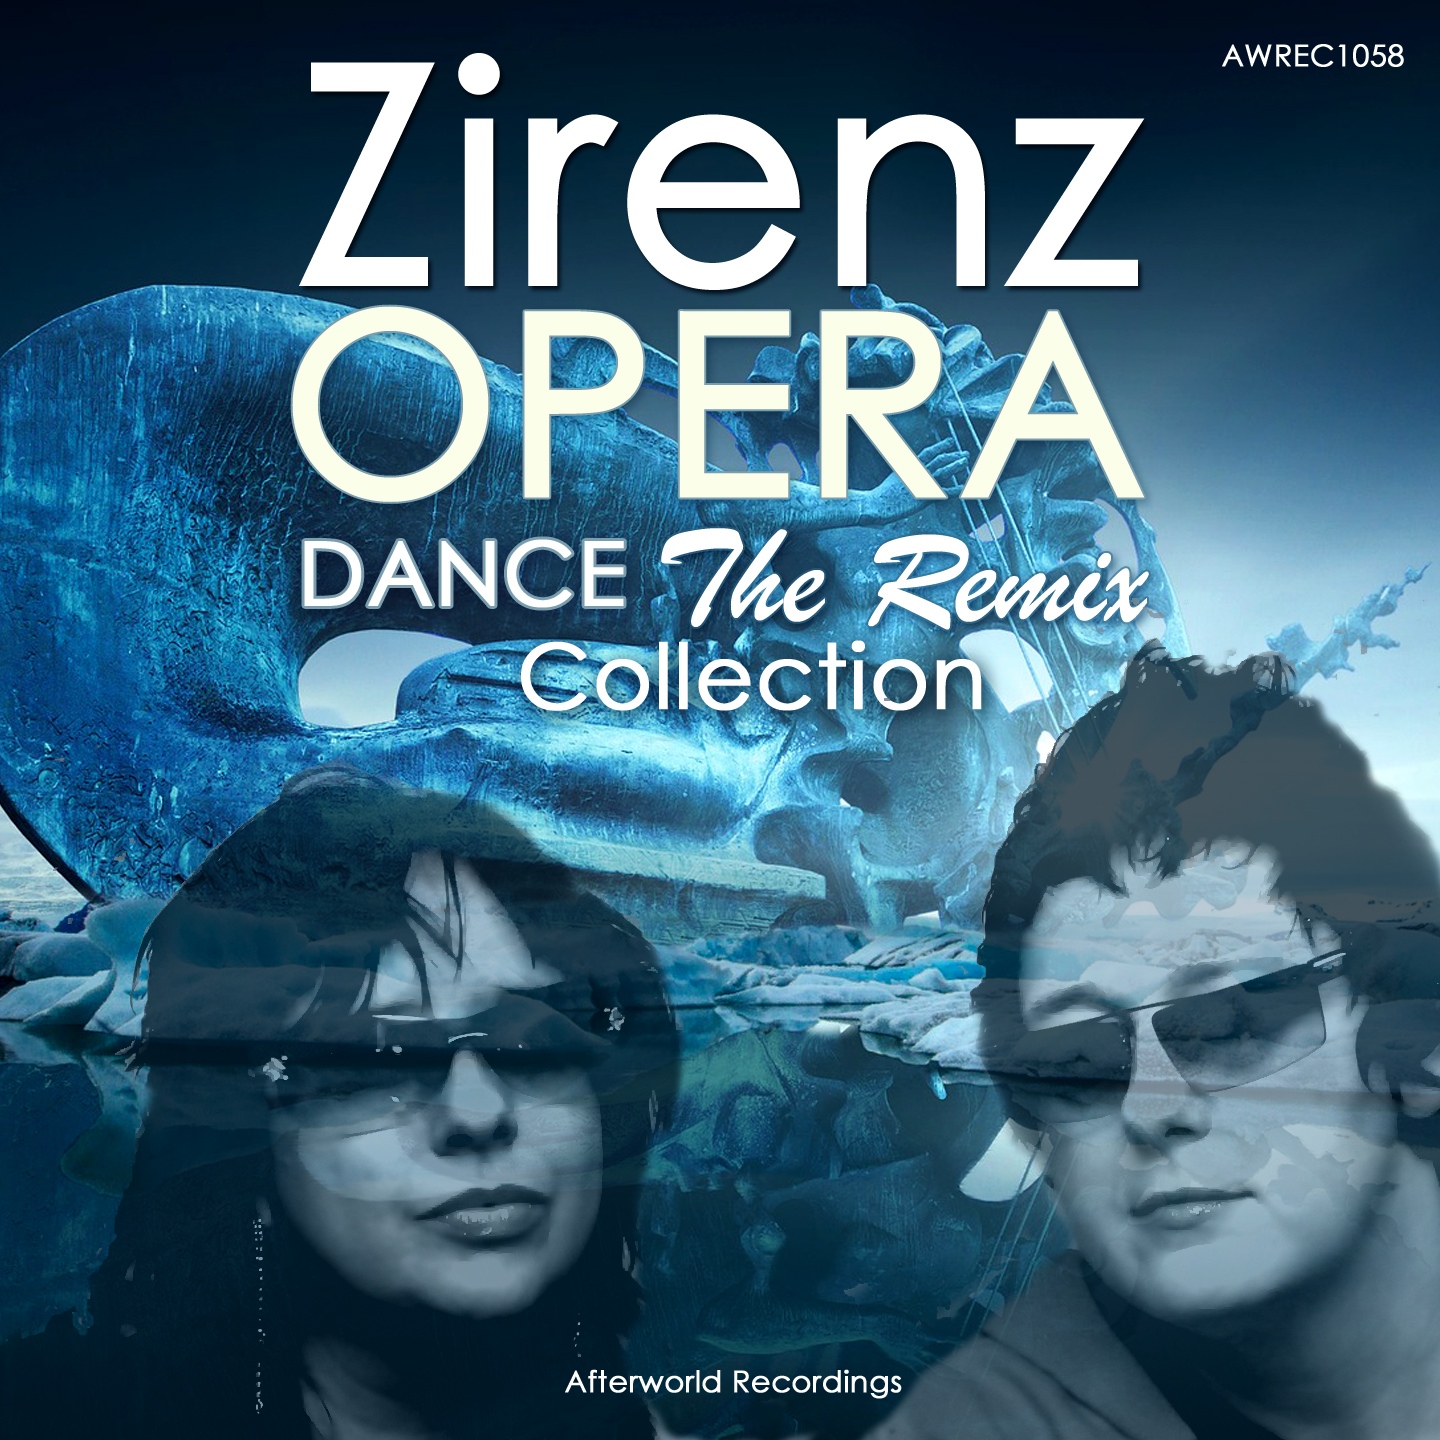 ZIRENZ OPERA DANCE